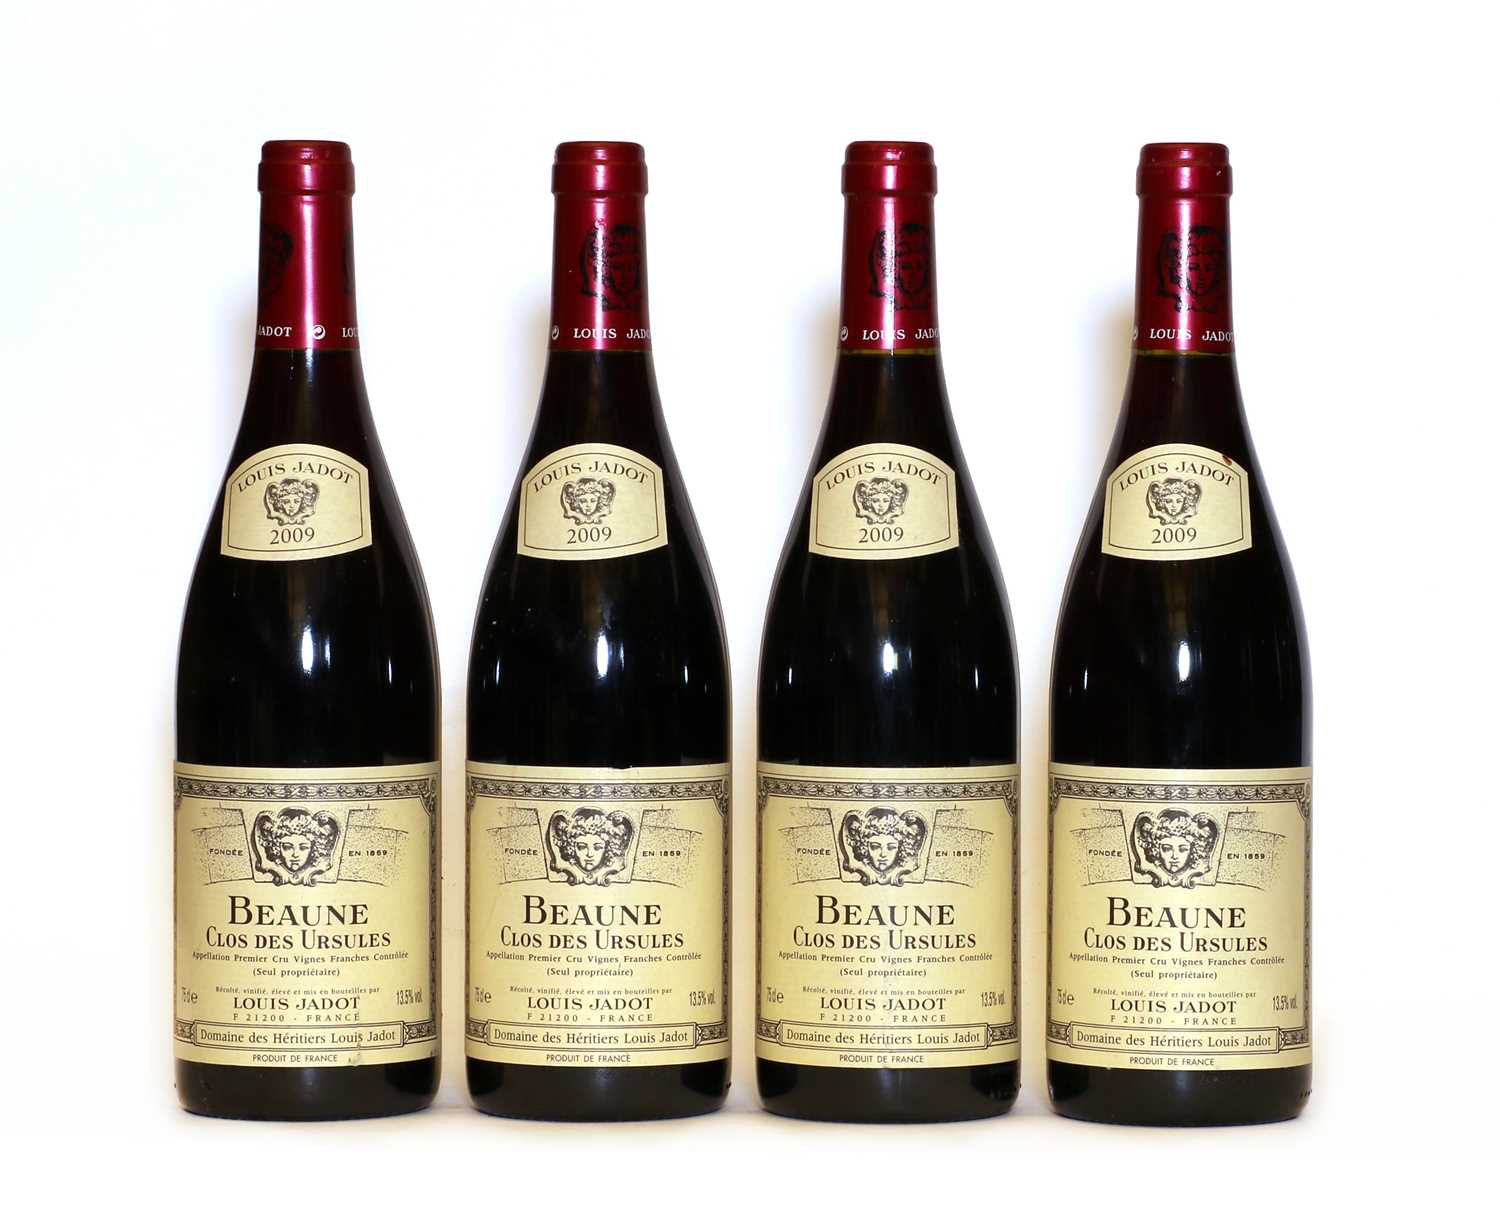 Lot 73 - Beaune, 1er Cru, Clos des Ursules, Les Vignes Franche, Domaine des Heritiers, 2009, four bottles